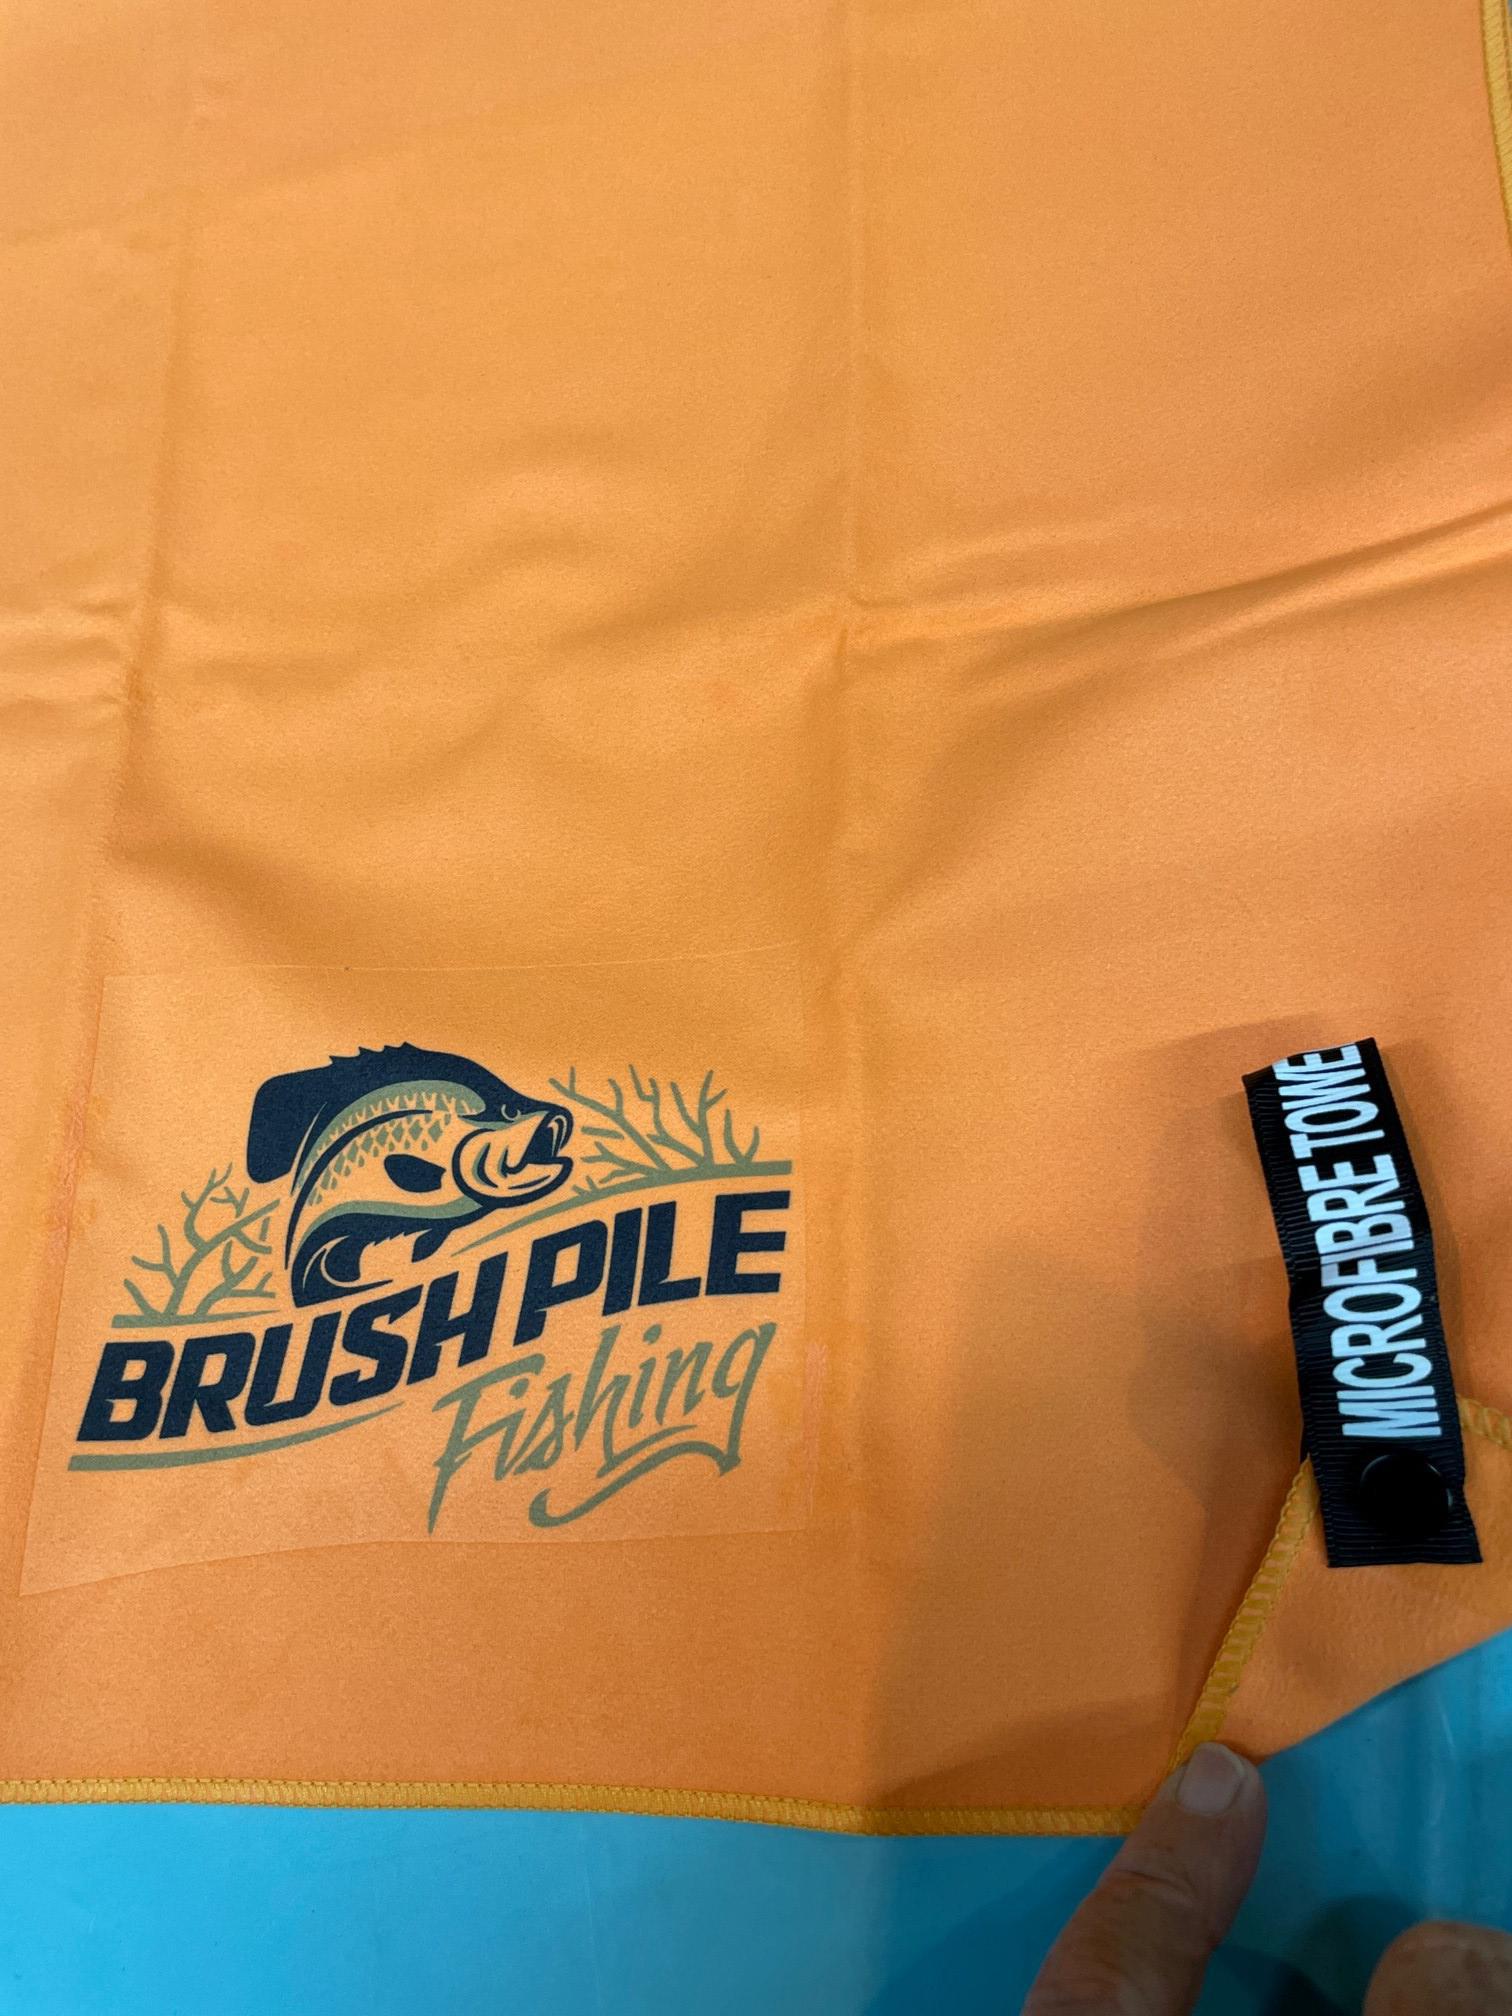 Brushpile Fishing Towel • BrushPile Fishing